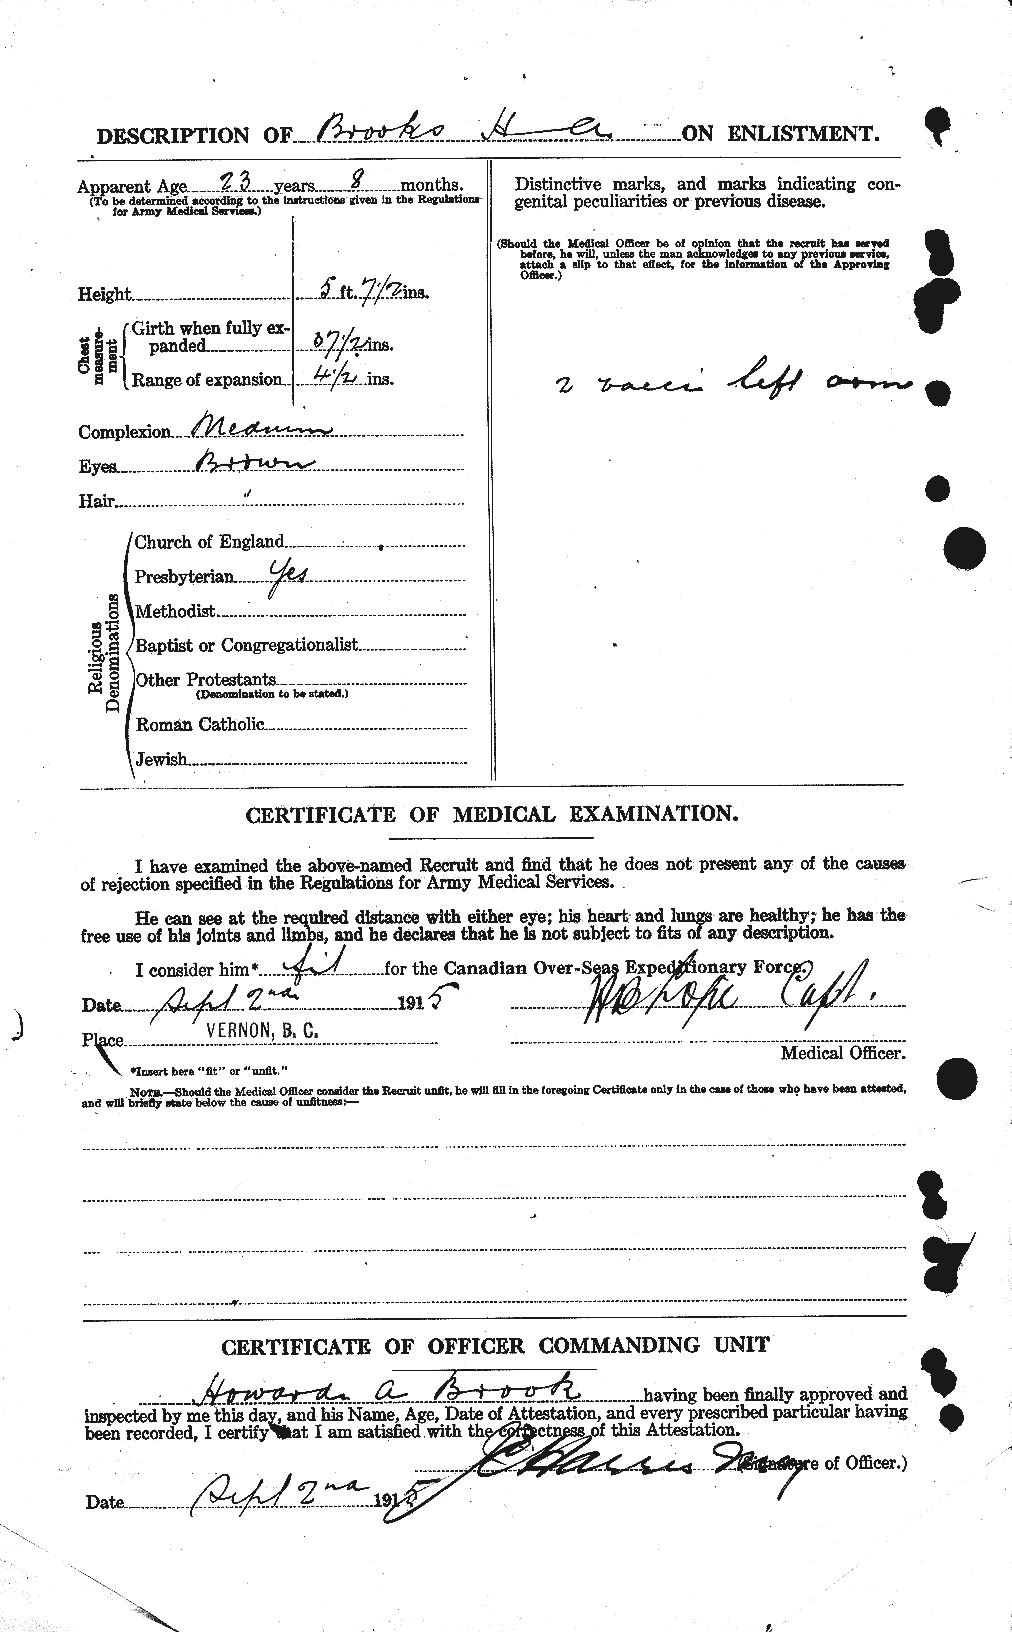 Dossiers du Personnel de la Première Guerre mondiale - CEC 261716b